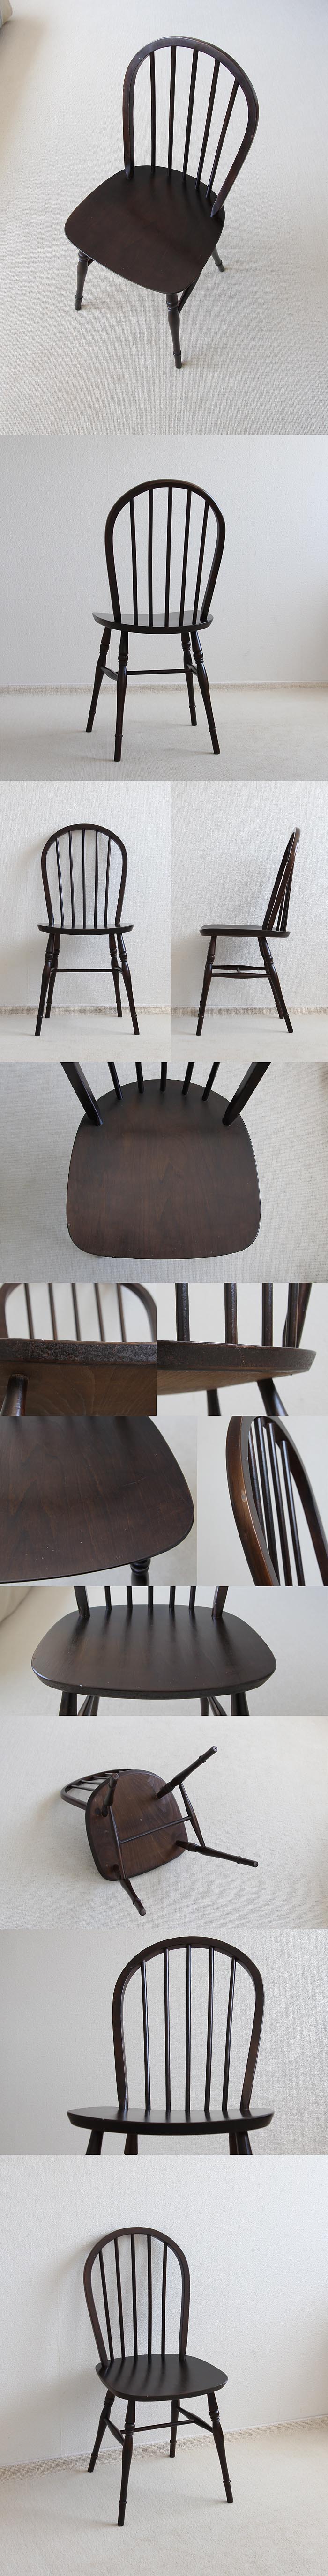 イギリス ヴィンテージ キッチンチェア 木製椅子 英国 家具「フープバックチェア」V-380